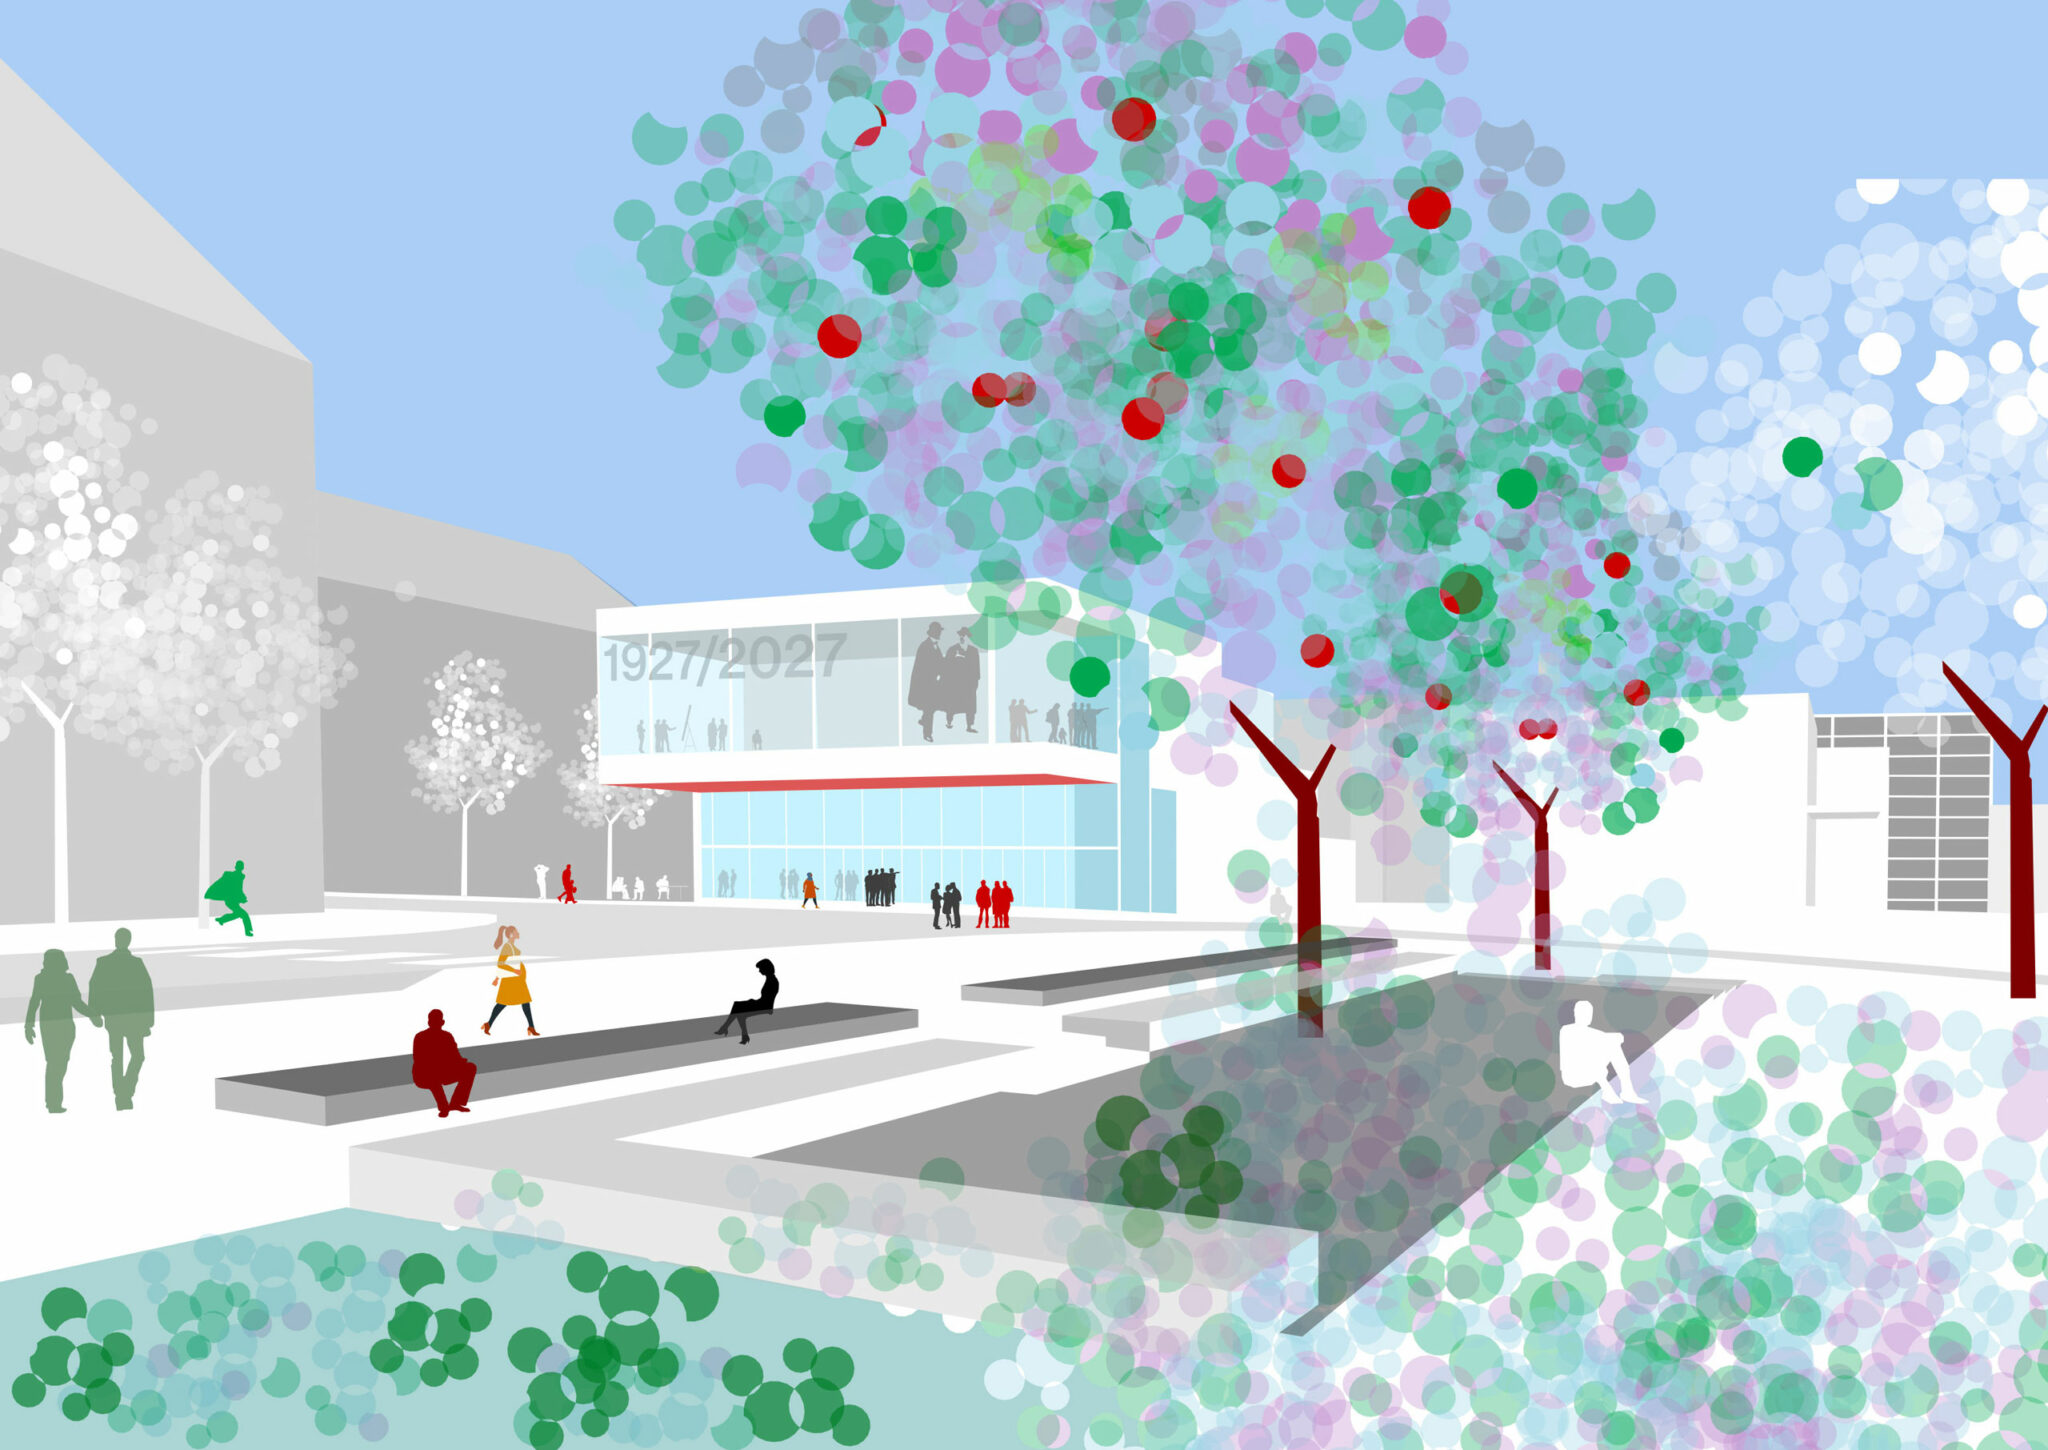 Abb.: Visualisierung des Empfangs- und Besucherzentrums. 1. Preis. Entwurf: Schmutz & Partner mit Scala und Pfrommer + Roeder